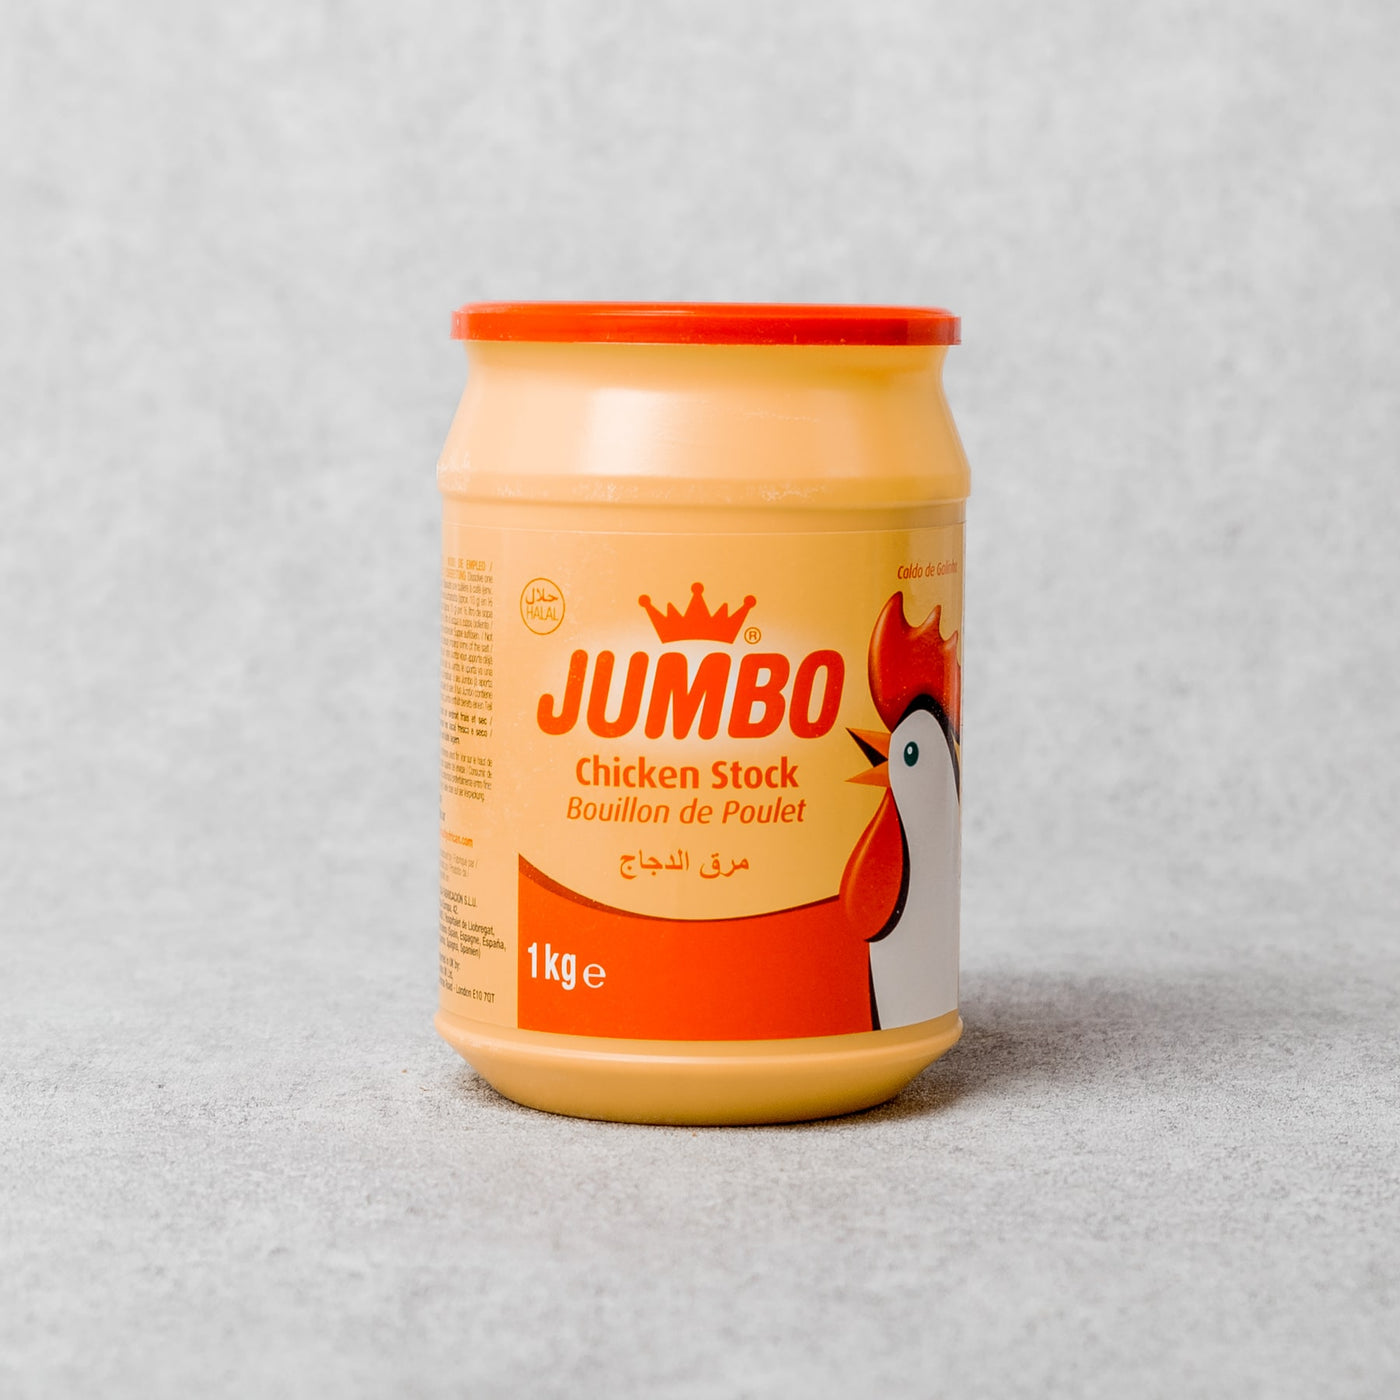 Jumbo - Chicken Stock